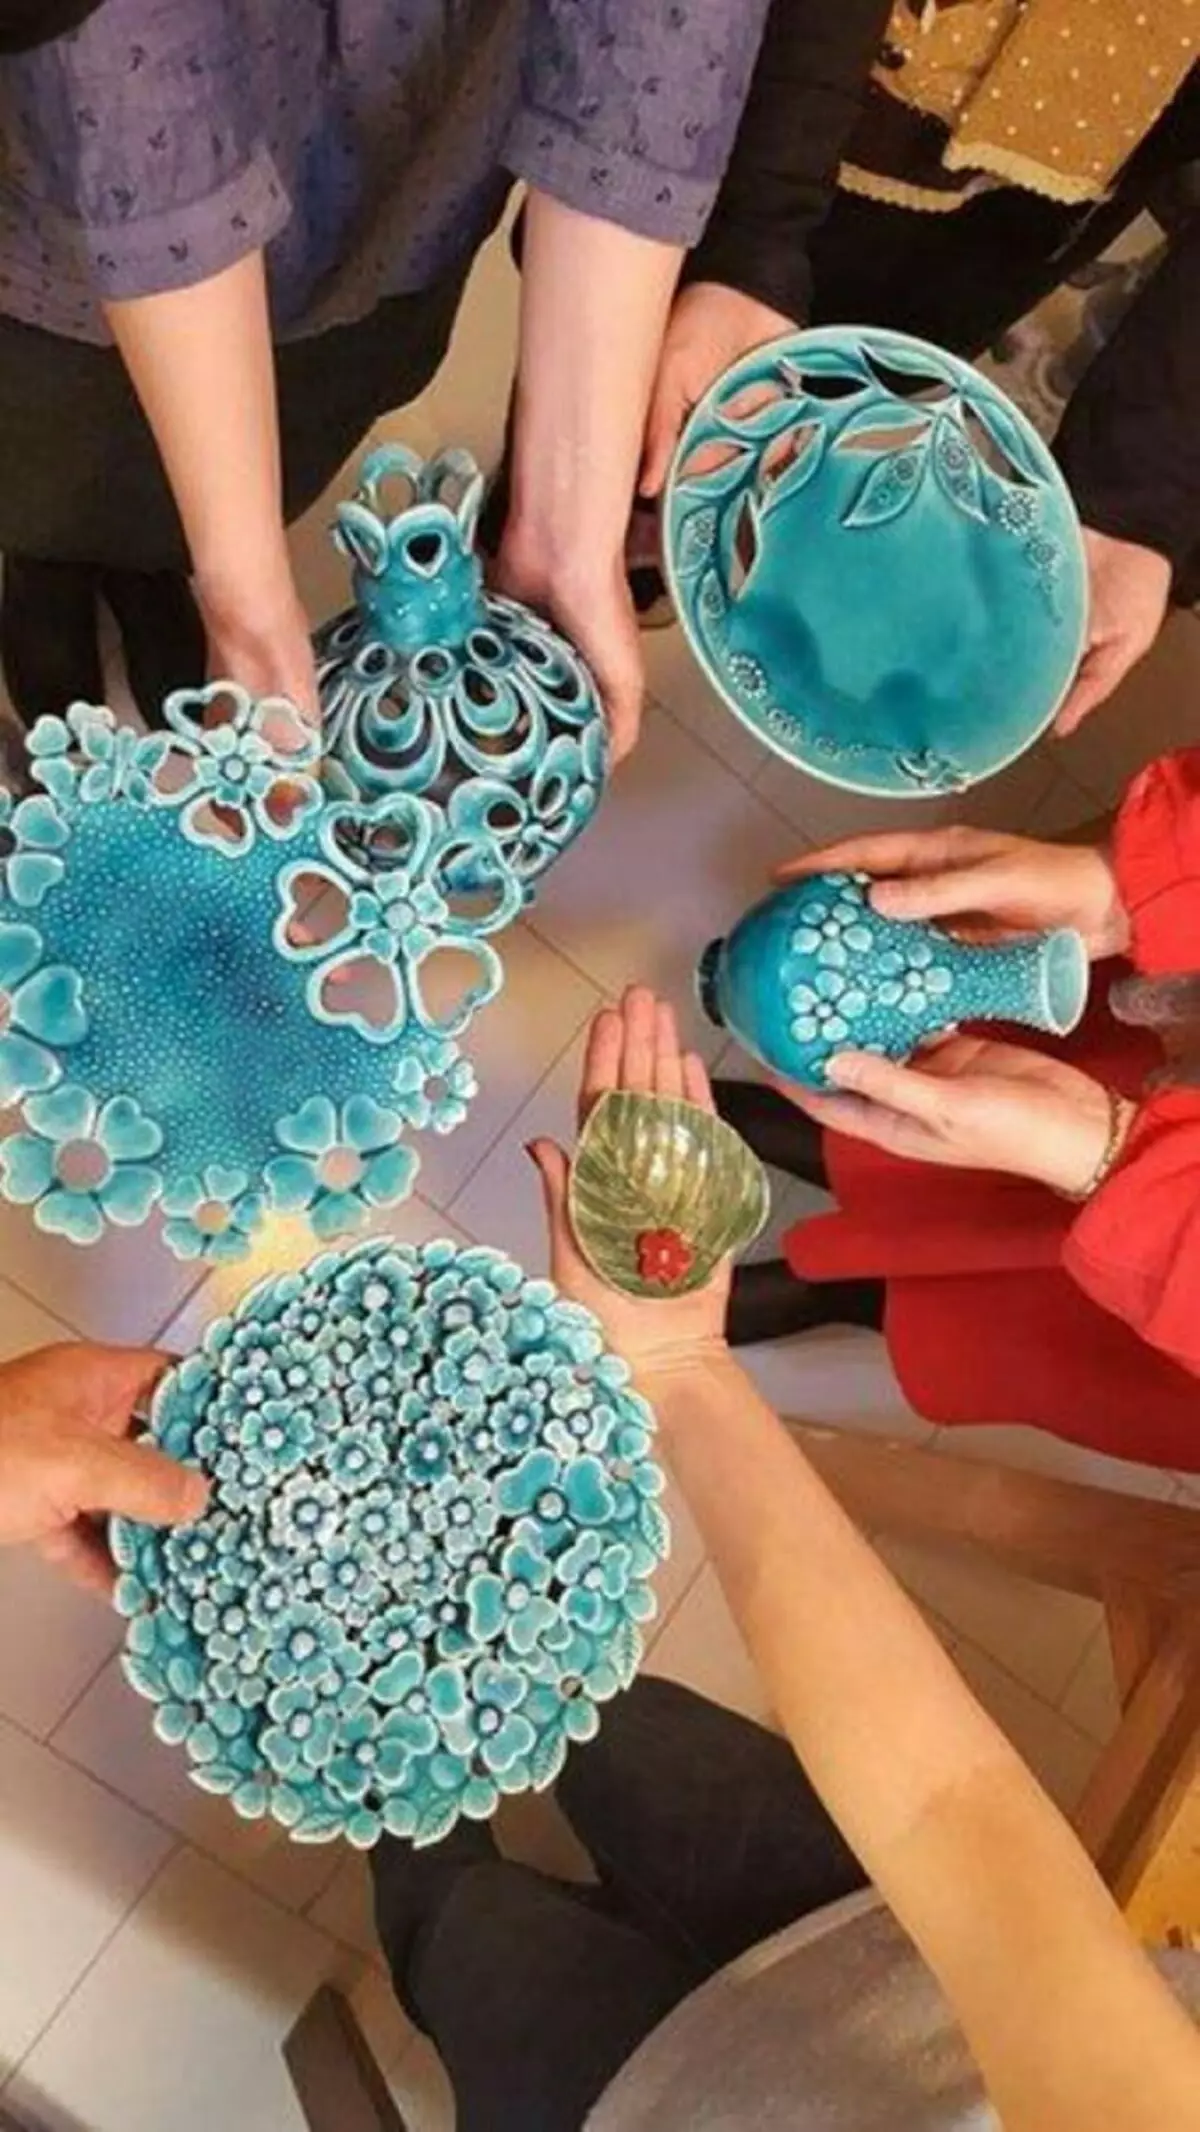 Handmade keramyk: ideeën foar dyjingen dy't dreame om mei klaai te wurkjen